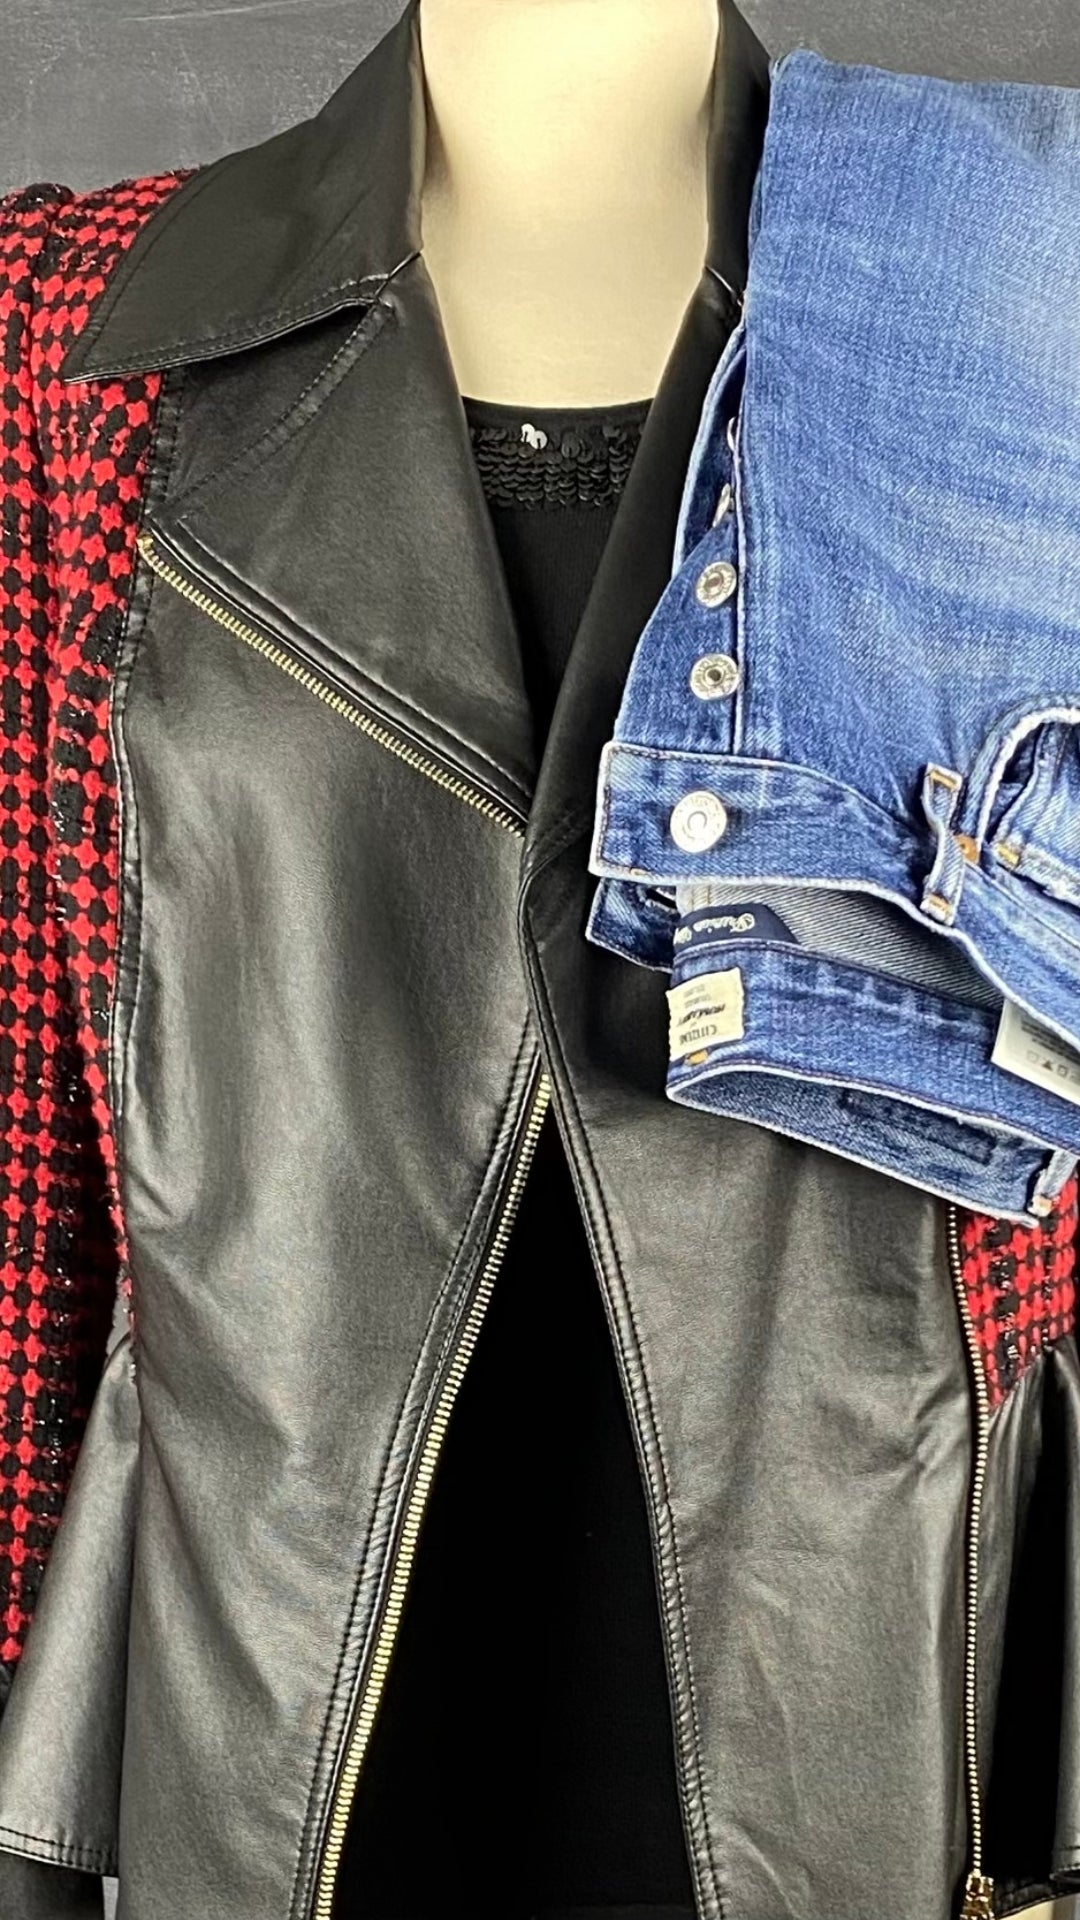 Jeans ajusté taille haute Citizens of Humanity, taille 23. Vue de l'agencement avec la veste style perfecto en tweed Tenax et le chandail Marc Aurel.